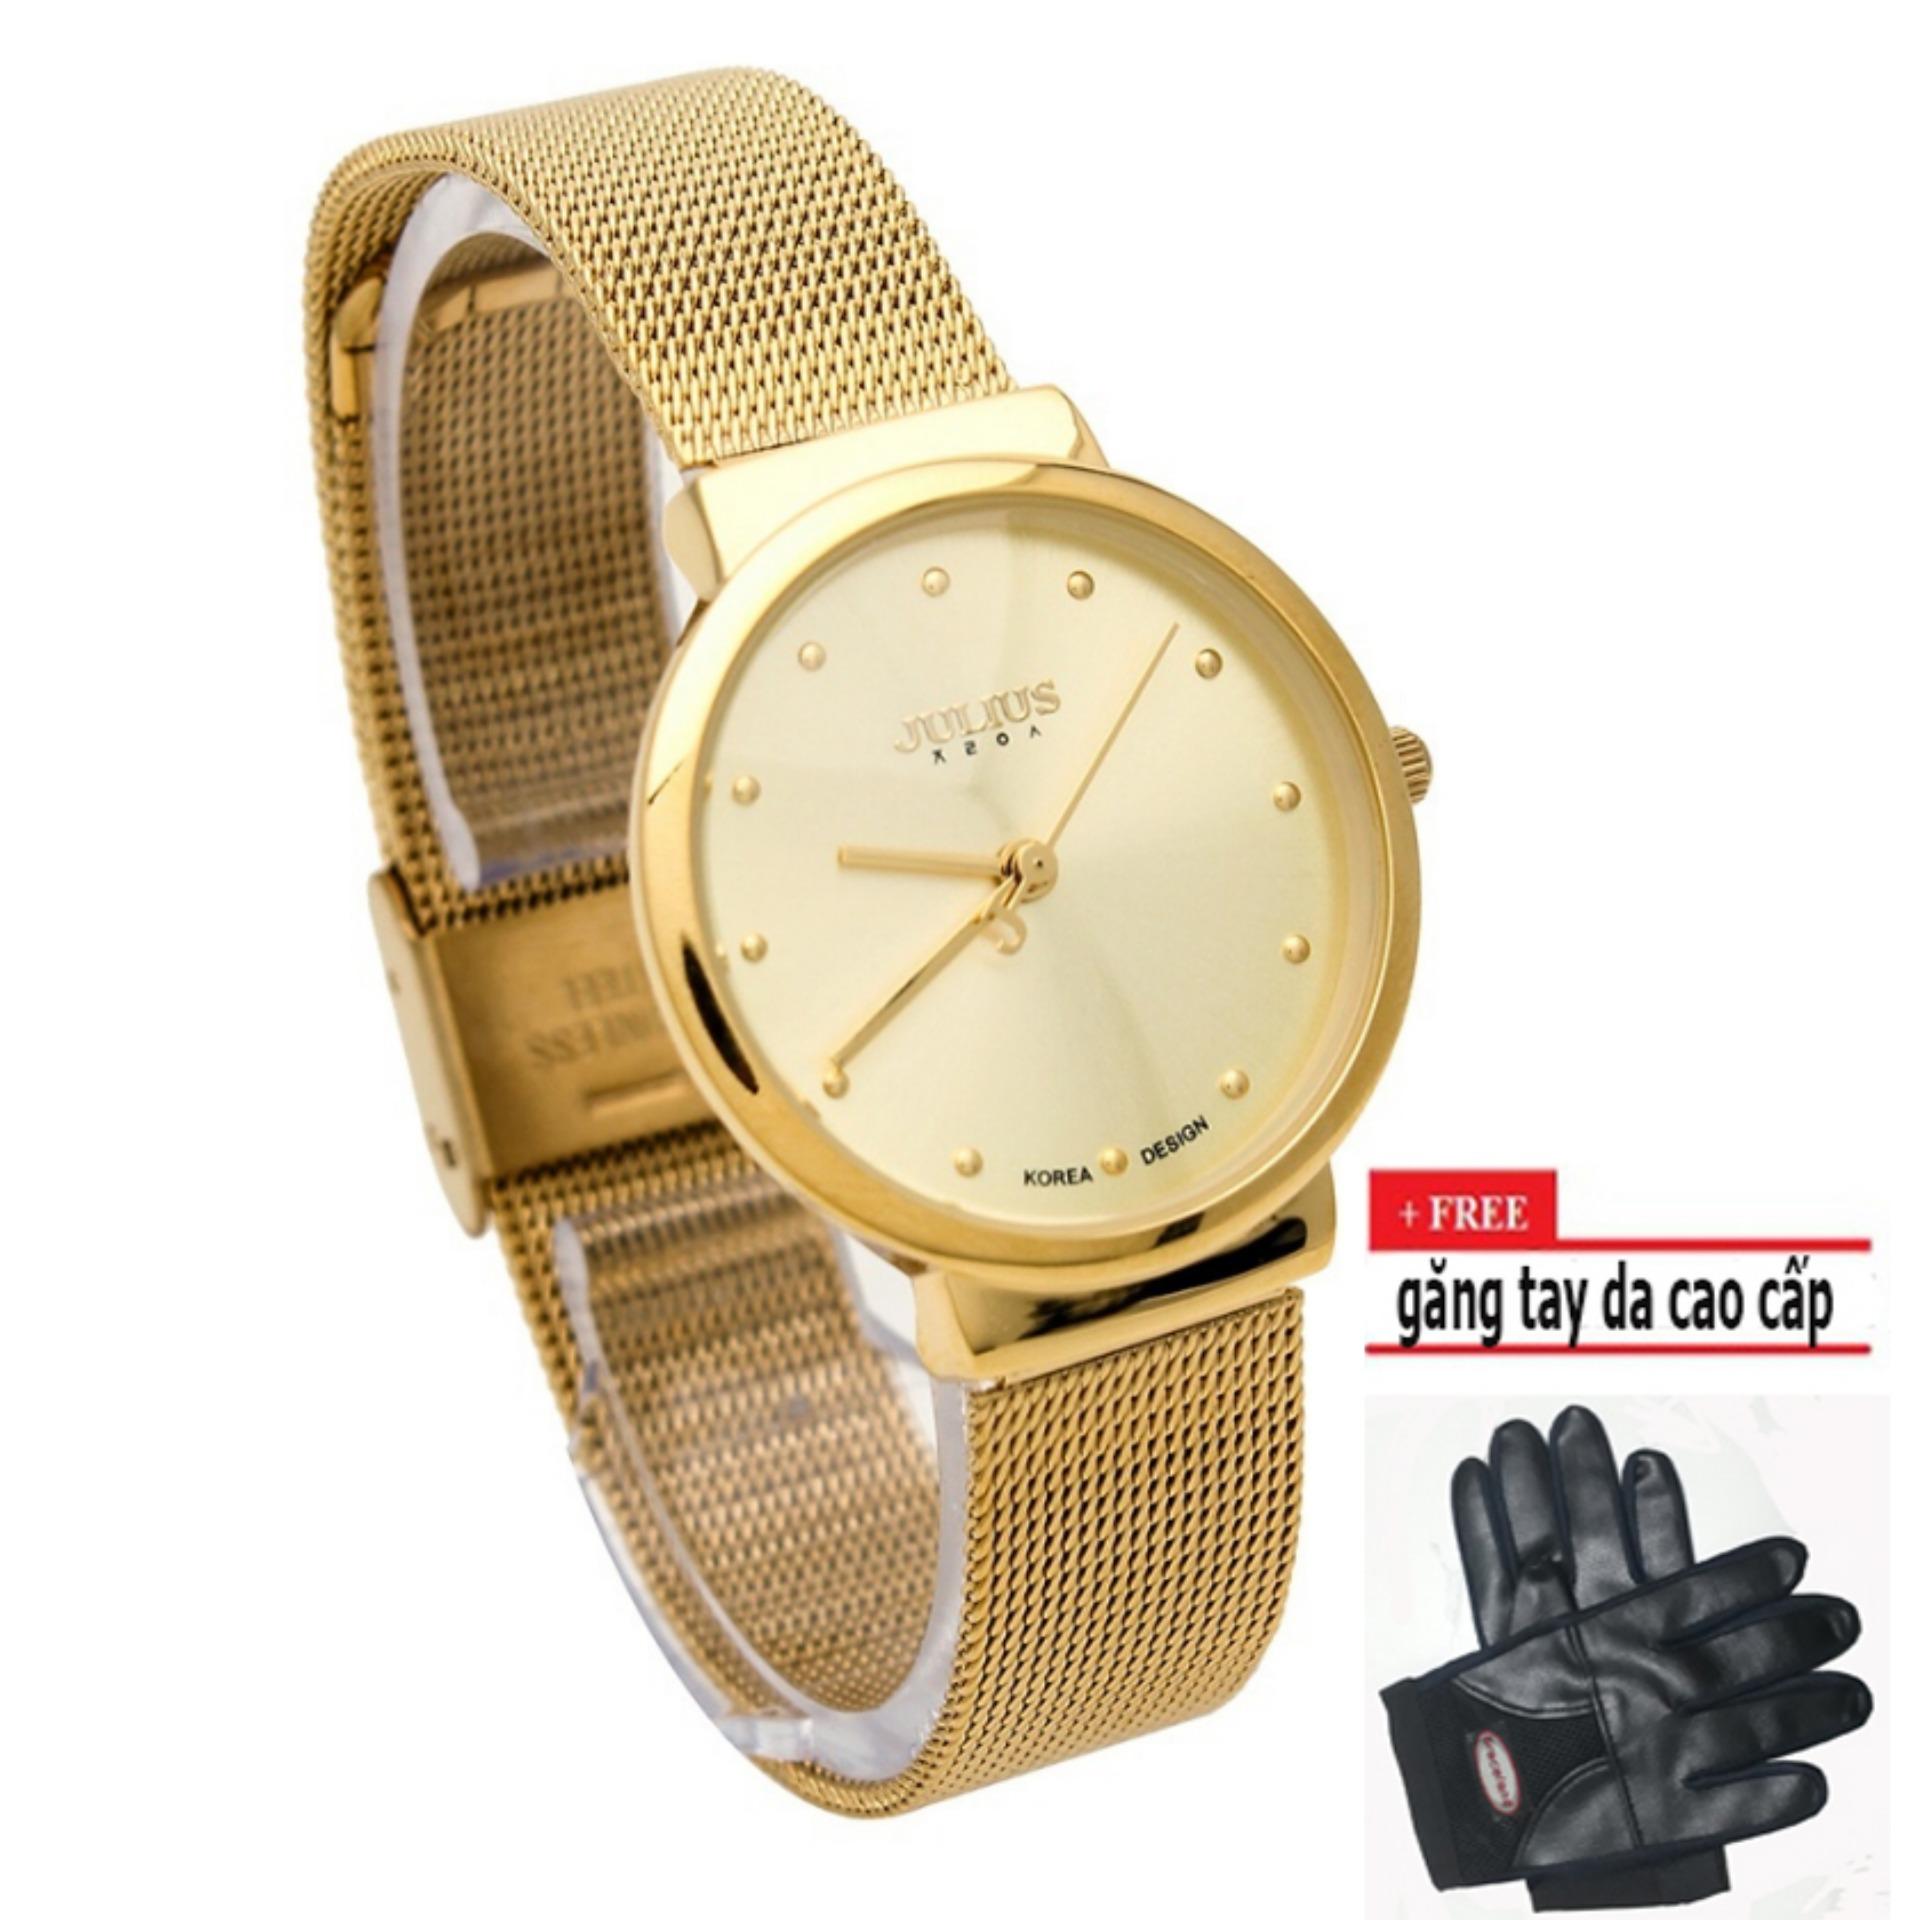 Đồng hồ Nữ Julius JU1052 siêu mỏng (vàng)+ tặng găng tay cao cấp